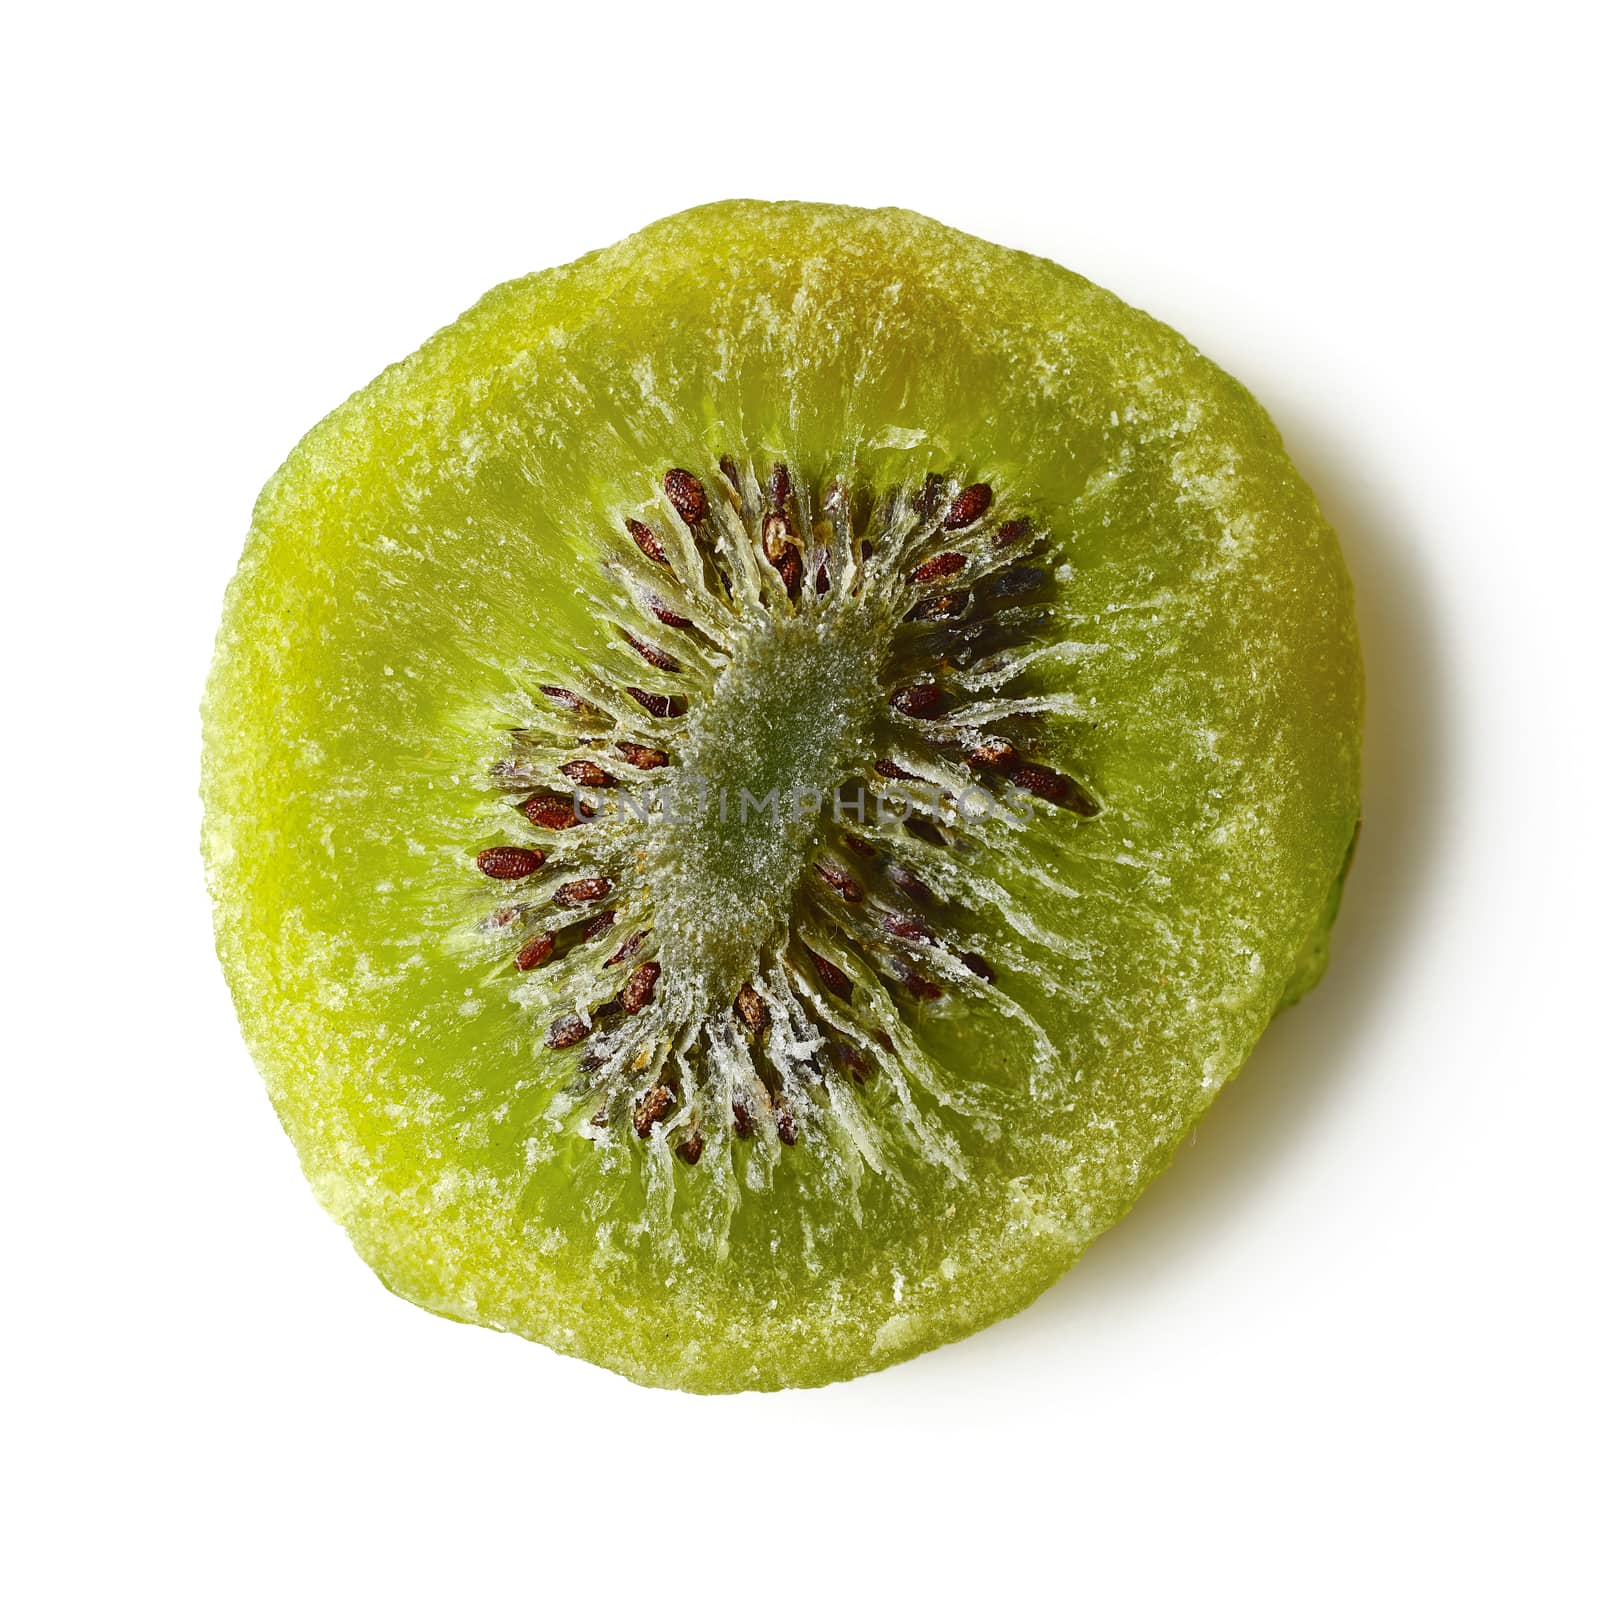 Dried Kiwi by antpkr